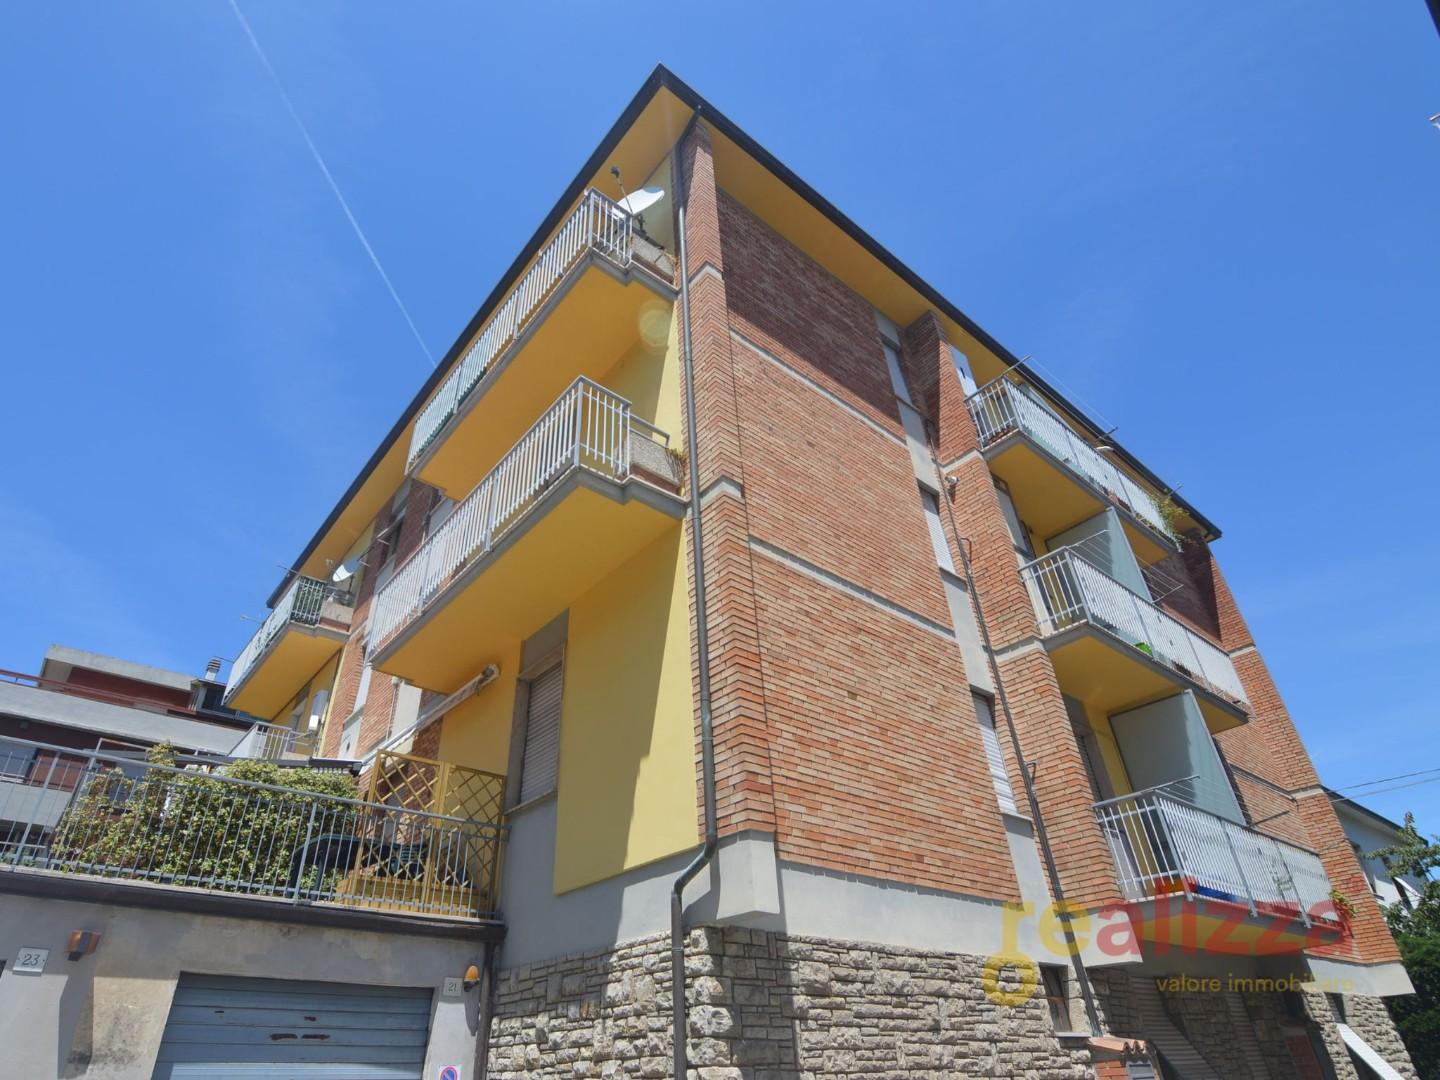 Appartamento in vendita a Perugia, 3 locali, prezzo € 75.000 | PortaleAgenzieImmobiliari.it